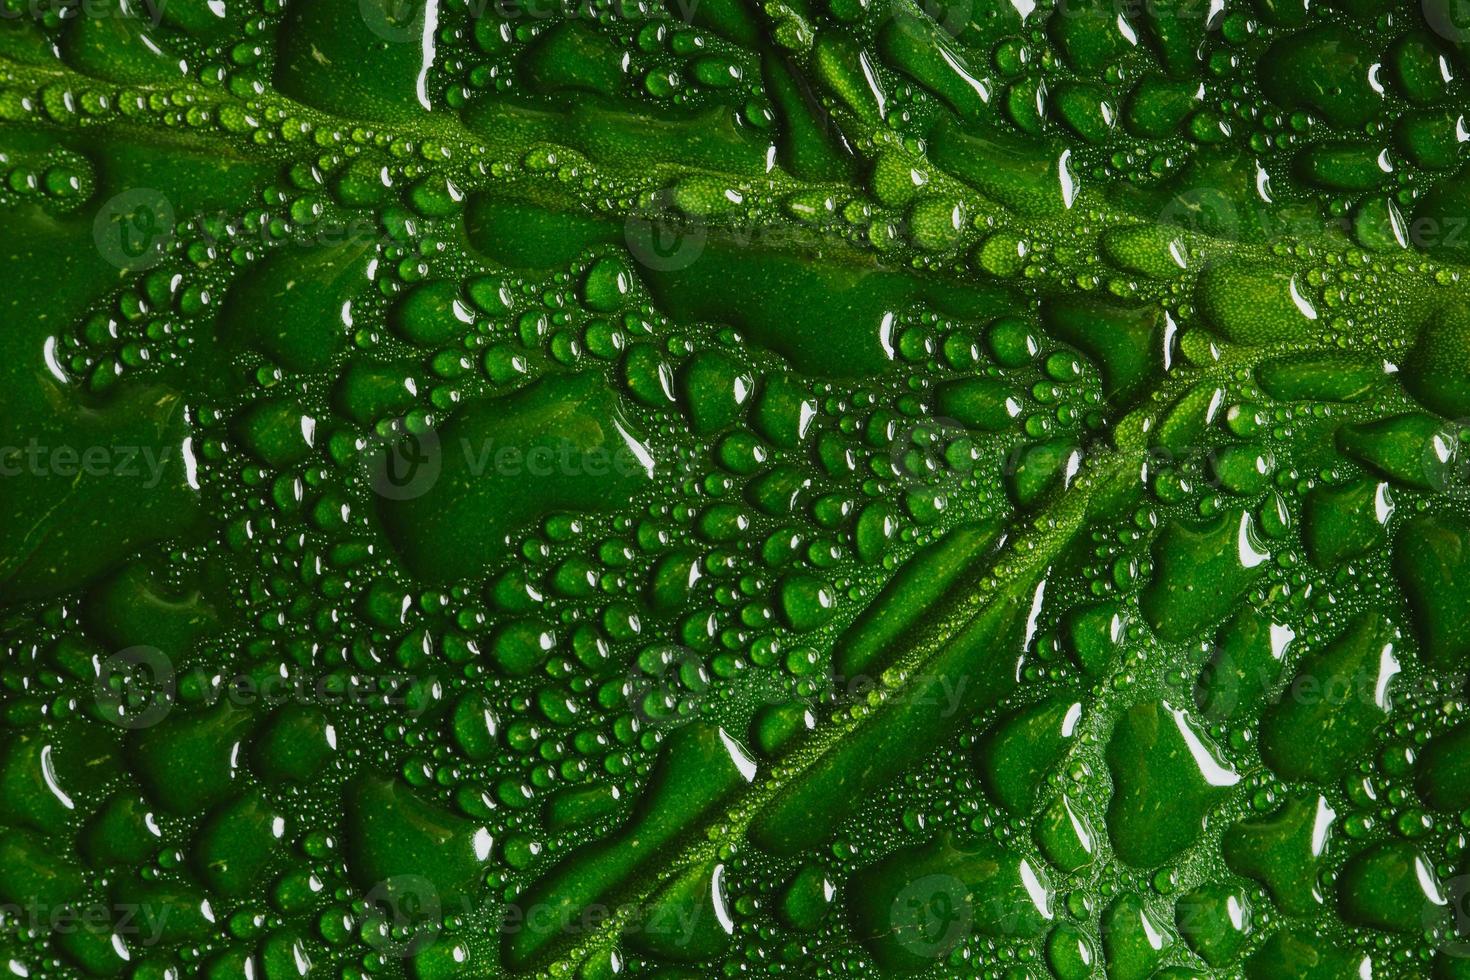 macro folha verde com gotas de água foto